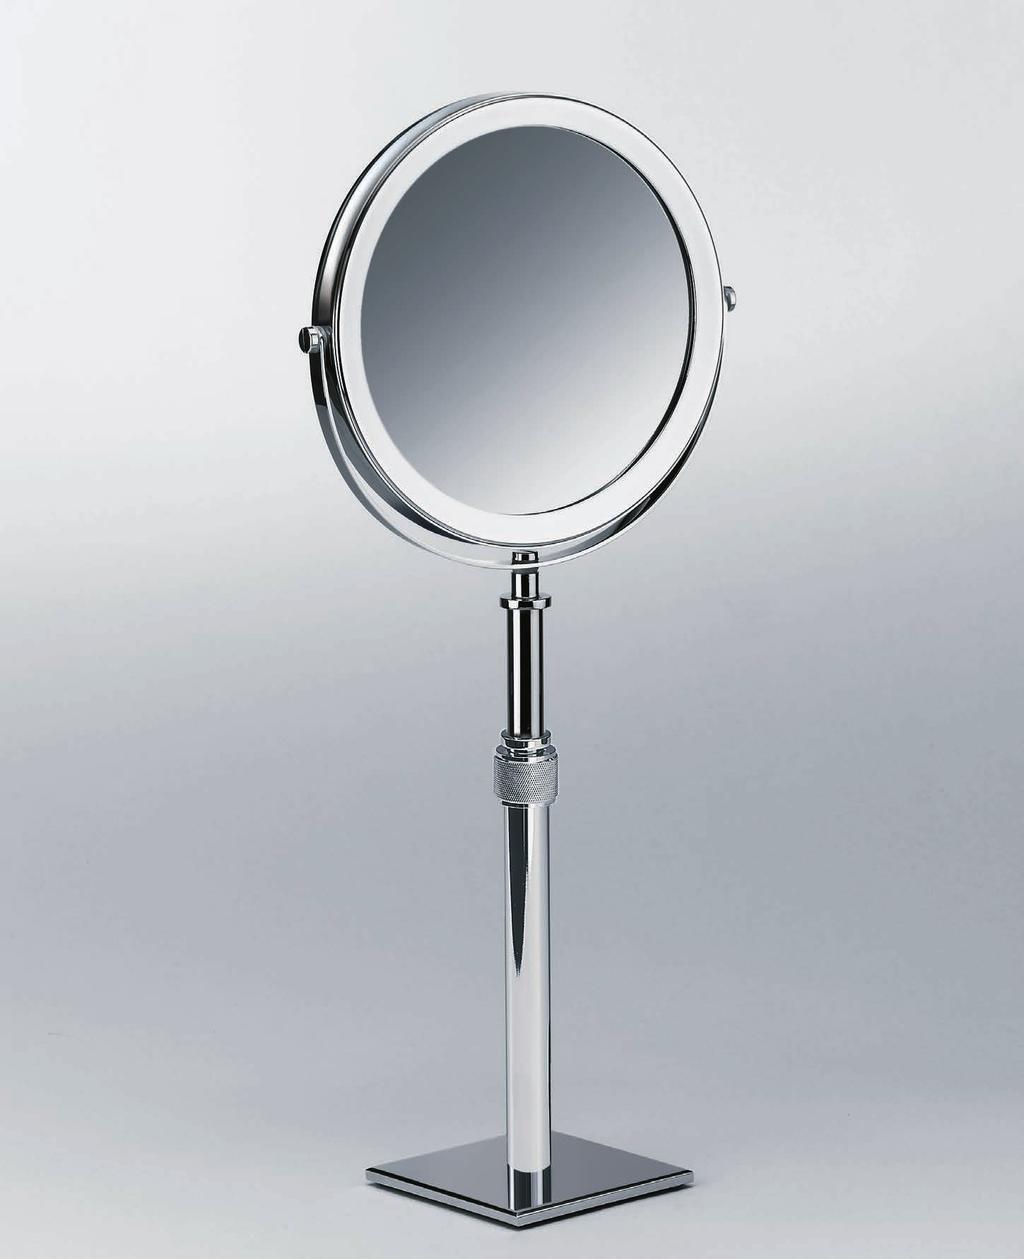 Standkosmetikspiegel / Cosmetic mirror SP 15 3-fache + 1-fache Vergrößerung / 3x + 1x magnification SP 15/V 5-fache + 1-fache Vergrößerung